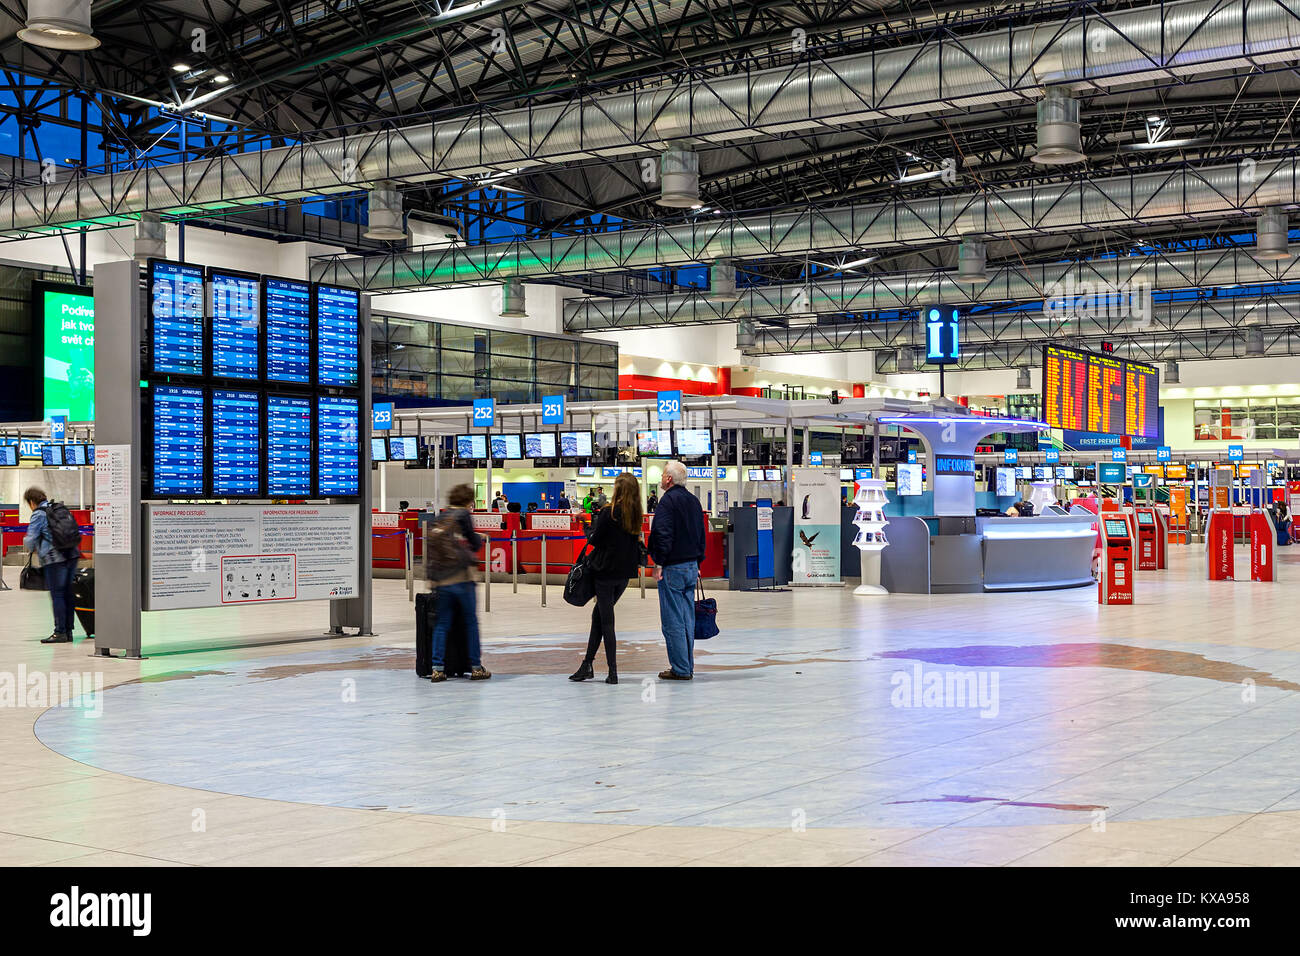 Prag, tschechische Republik - 23. SEPTEMBER 2015: Deturpare Bereich von Vaclav Havel, früher bekannt als Flughafen Ruzyne - Internationaler Flughafen von Prag. Stockfoto